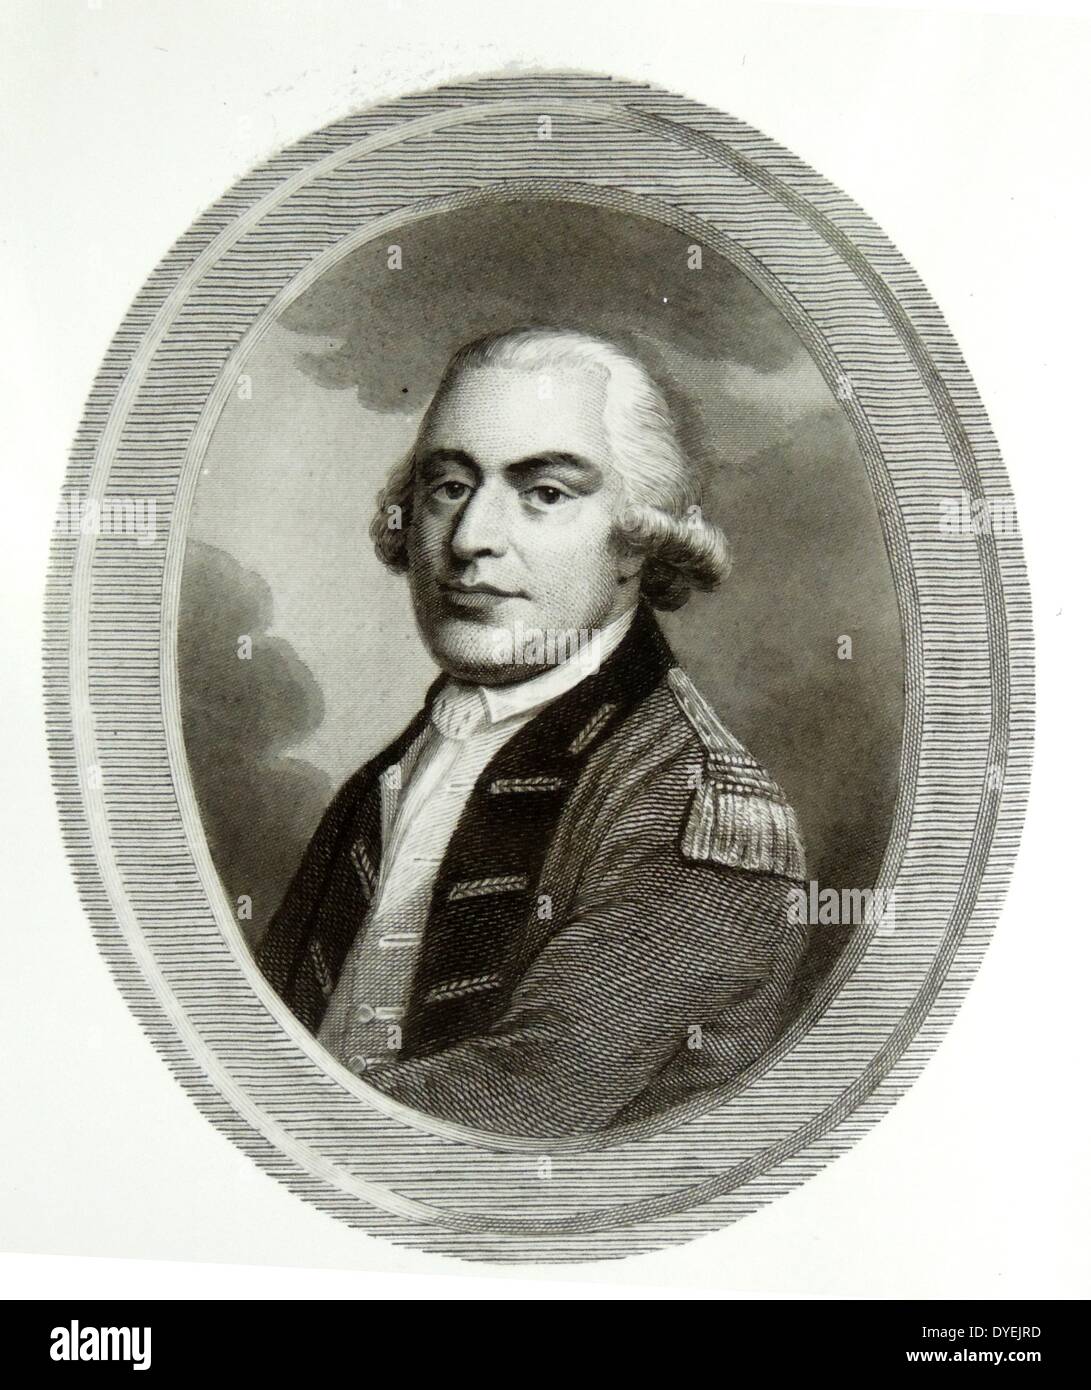 Thomas Gage (1719 oder 1720 [1] - 2. April 1787) war ein britischer General, der für seinen langjährigen Dienst in Nordamerika bekannt, einschließlich seiner Rolle als militärischer Befehlshaber in den frühen Tagen der Amerikanischen Revolution Stockfoto